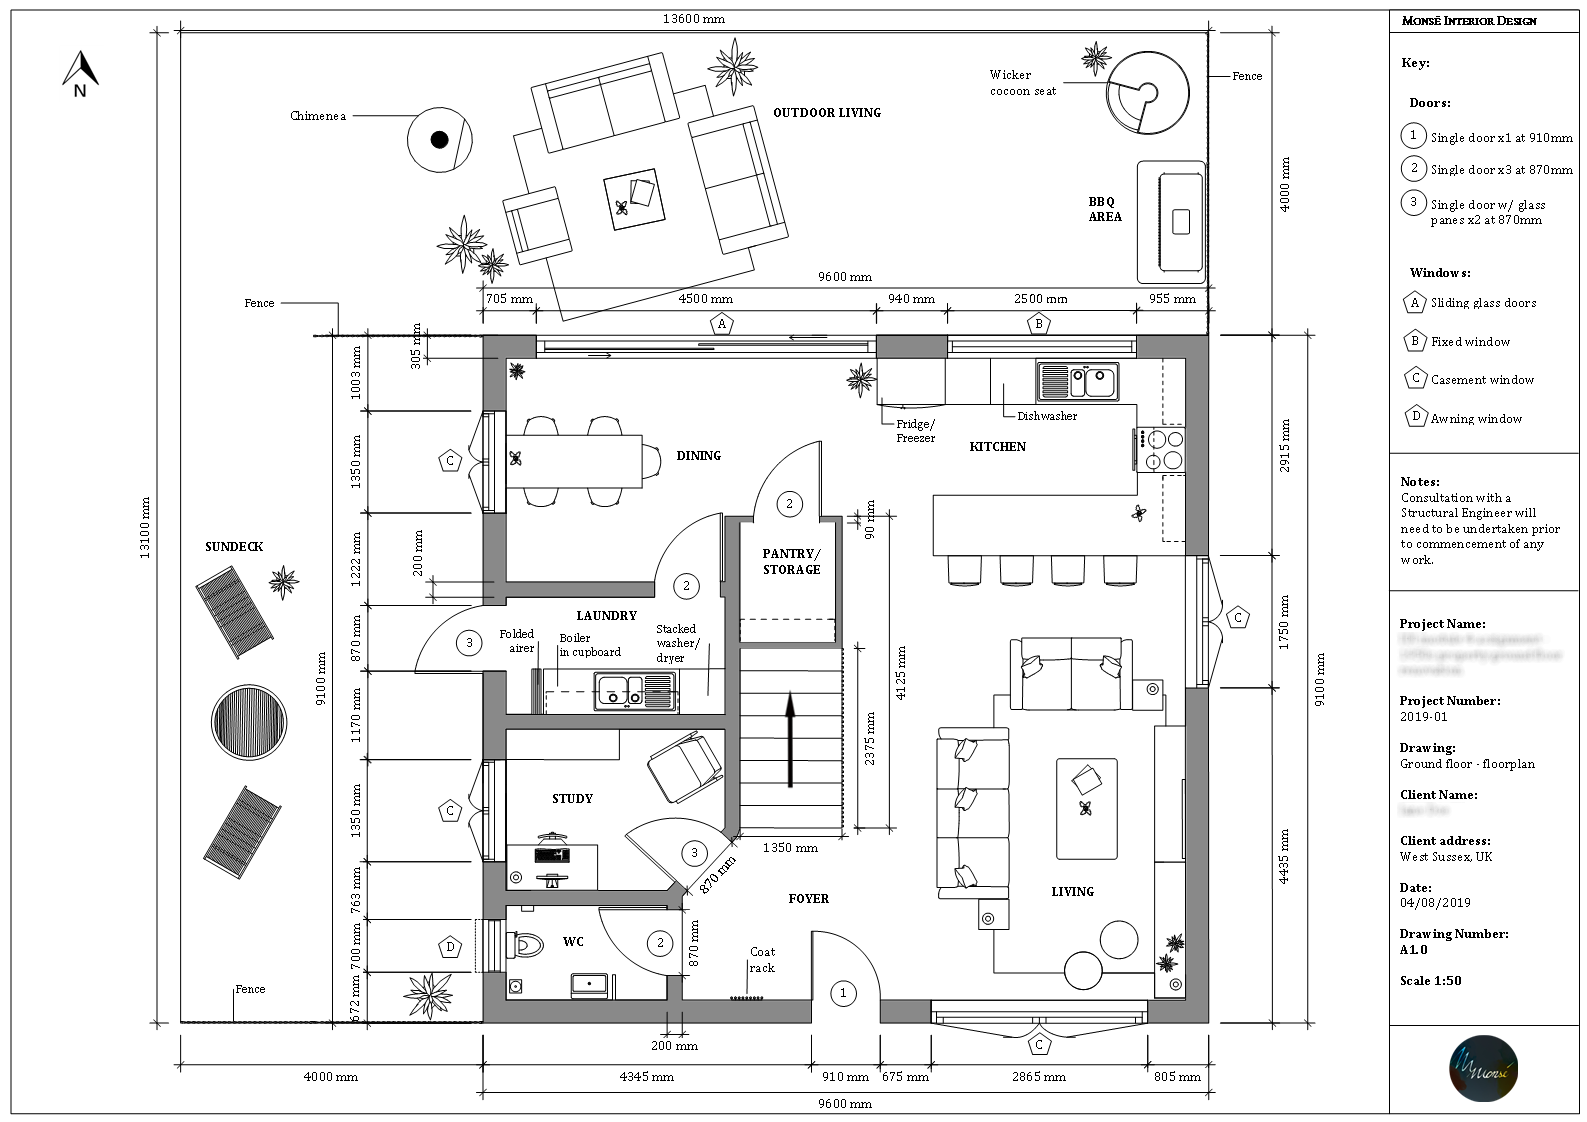 1950s property – ground floor renovation – floorplan_anonymised